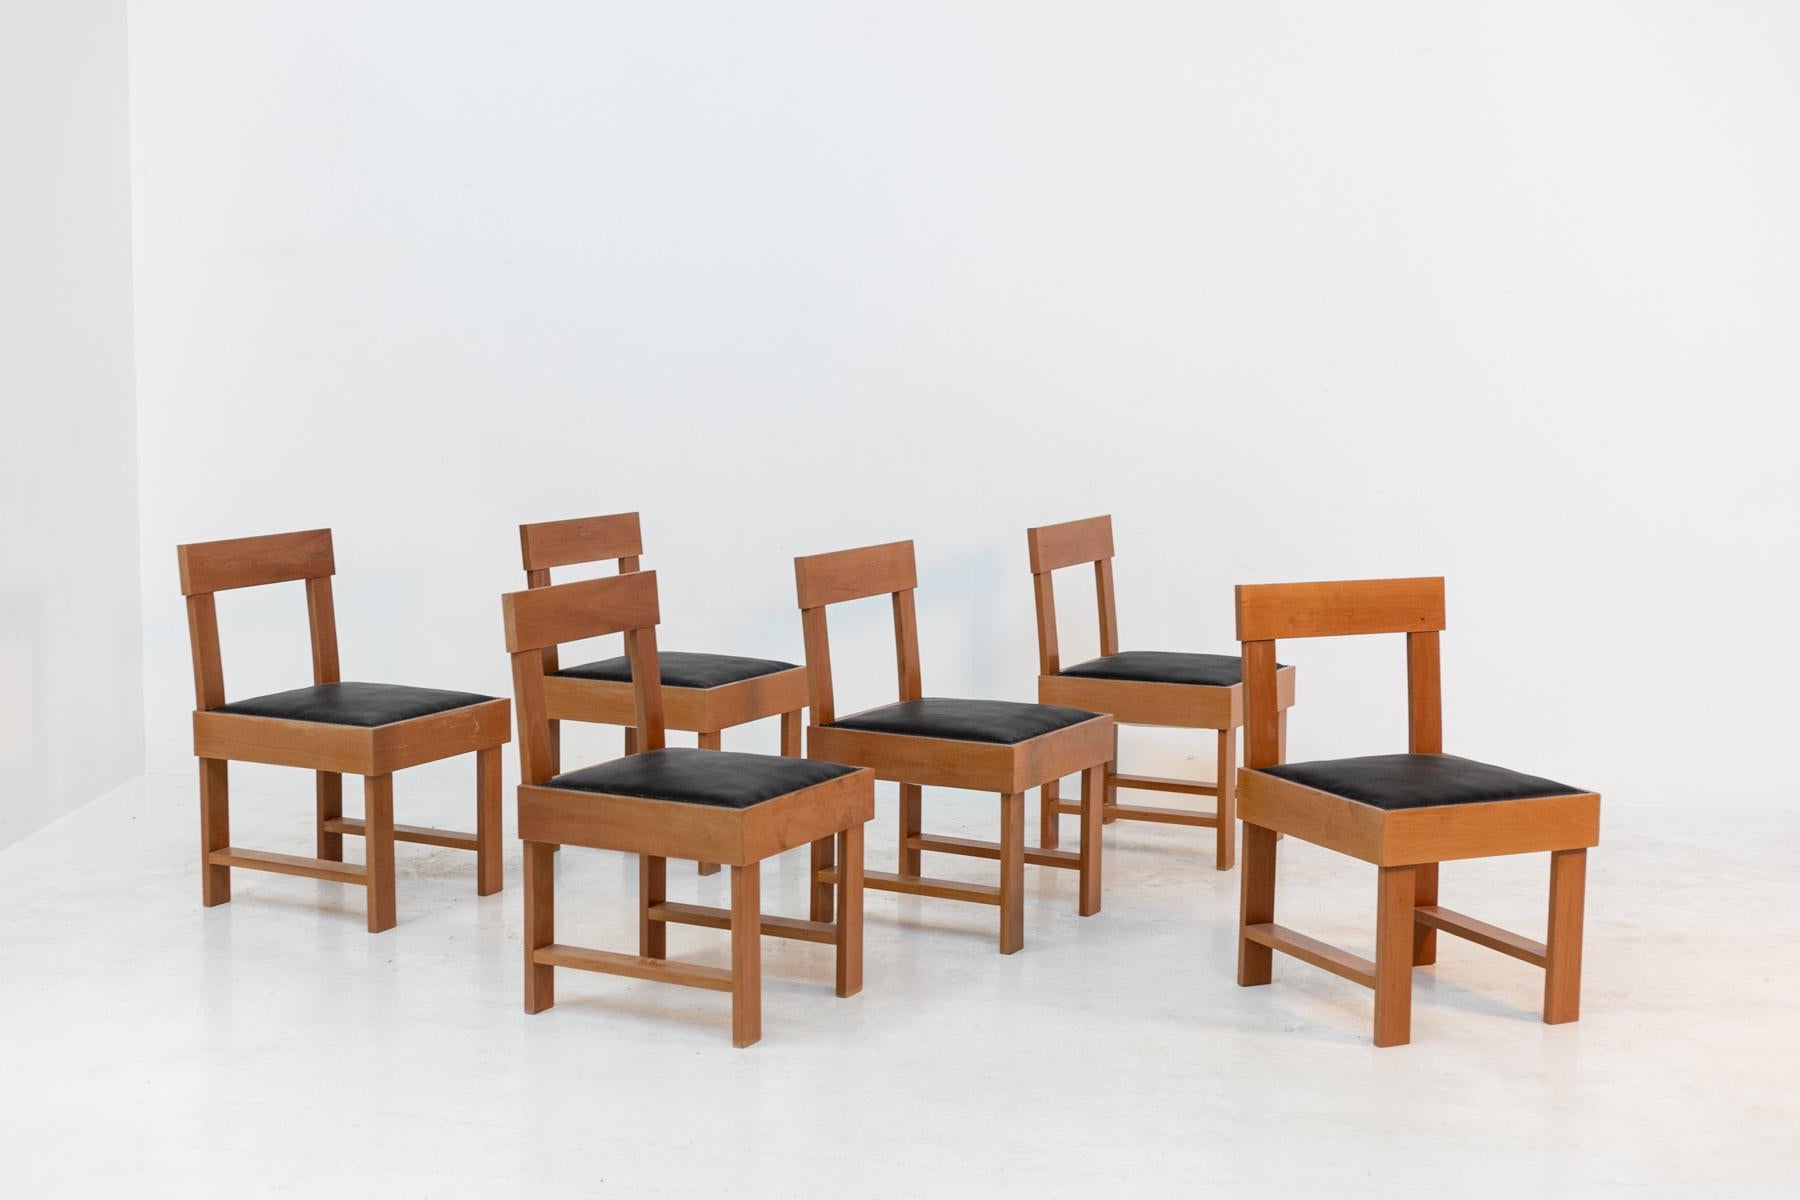 Die Stühle sind in ausgezeichnetem Zustand, weil sie vor kurzem restauriert und neu gepolstert in feinen schwarzen Leder.Die Stühle haben quadratische und strenge geometrische Formen.Starke Struktur in feinem Holz, offene Rückenlehne, gepolsterte